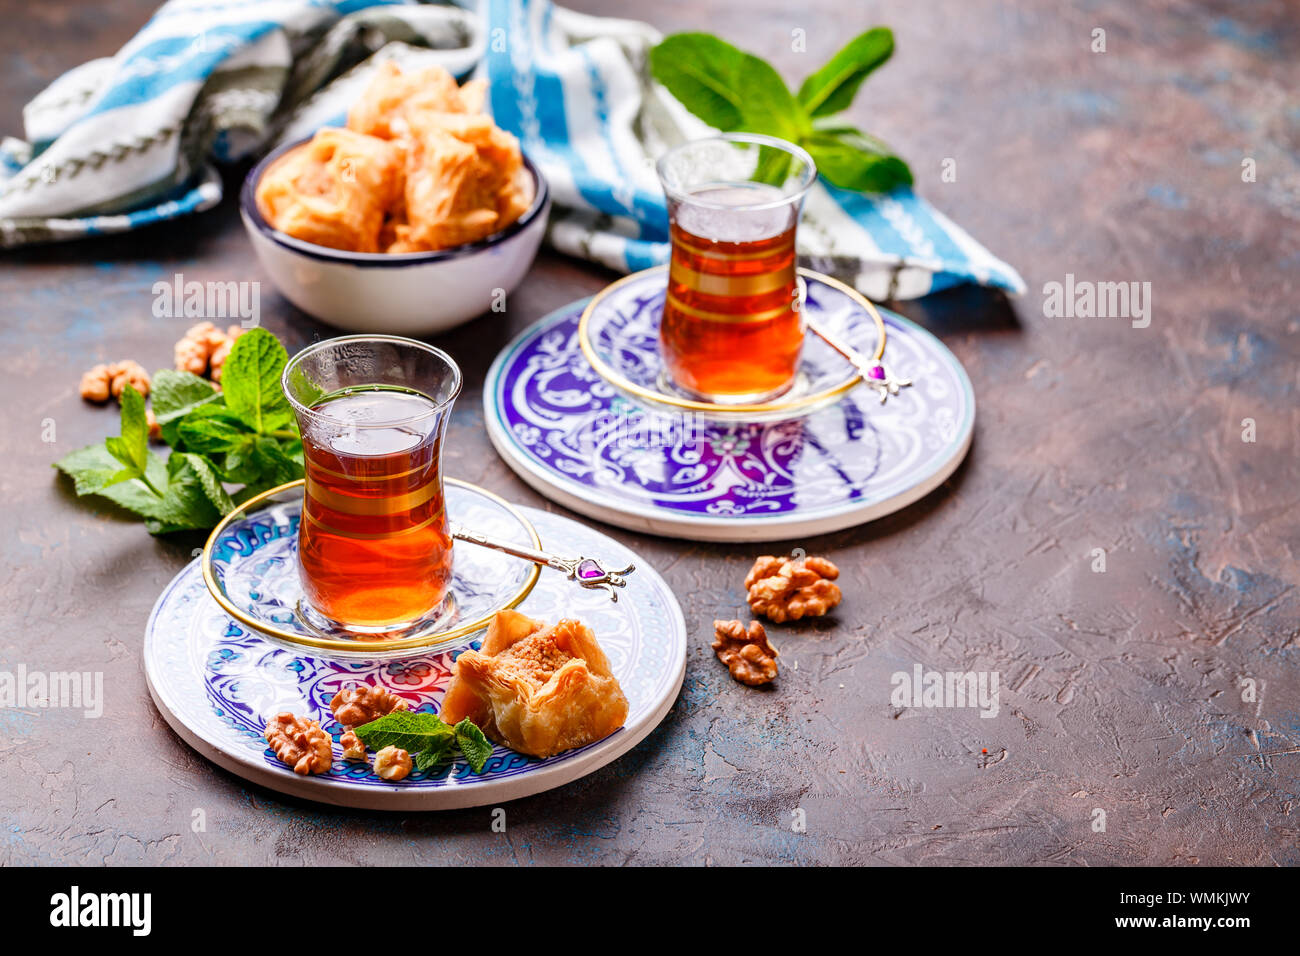 Im Nahen und Mittleren Osten oder arabischen Tee mit Minze in einem traditionellen Glas Schale und Türkische Süßigkeit Baklava. Ramadan Kareem. Eid Mubarak. Islamische Feiertage decorat Stockfoto